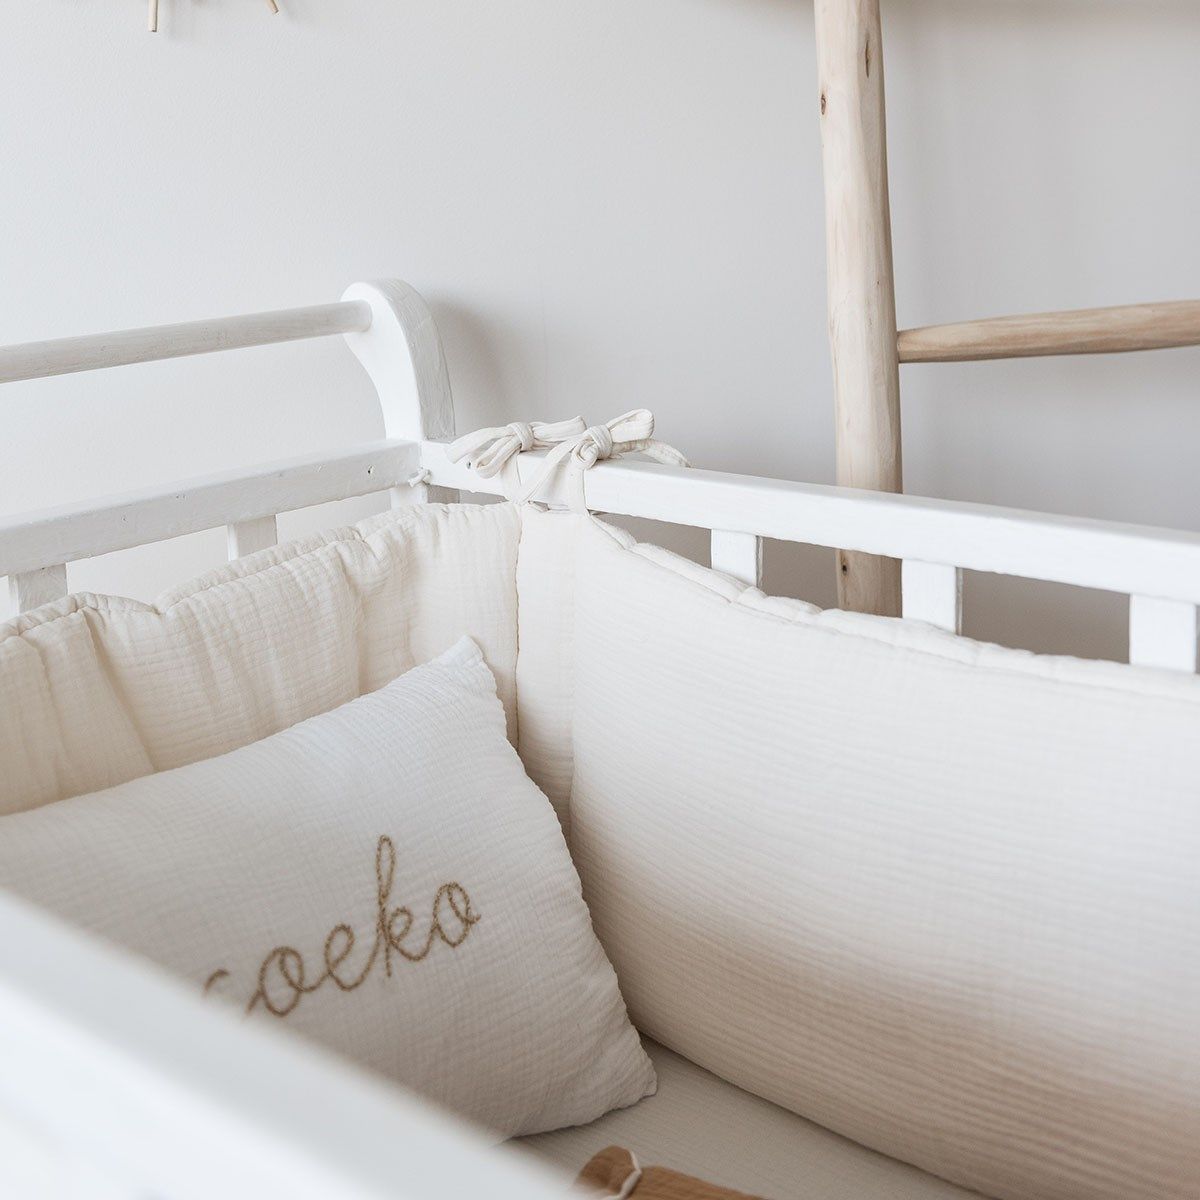 Enfants Soins bébé Linge de lit Couvertures Kimbaloo Couvertures Gigoteuse et tour de lit 